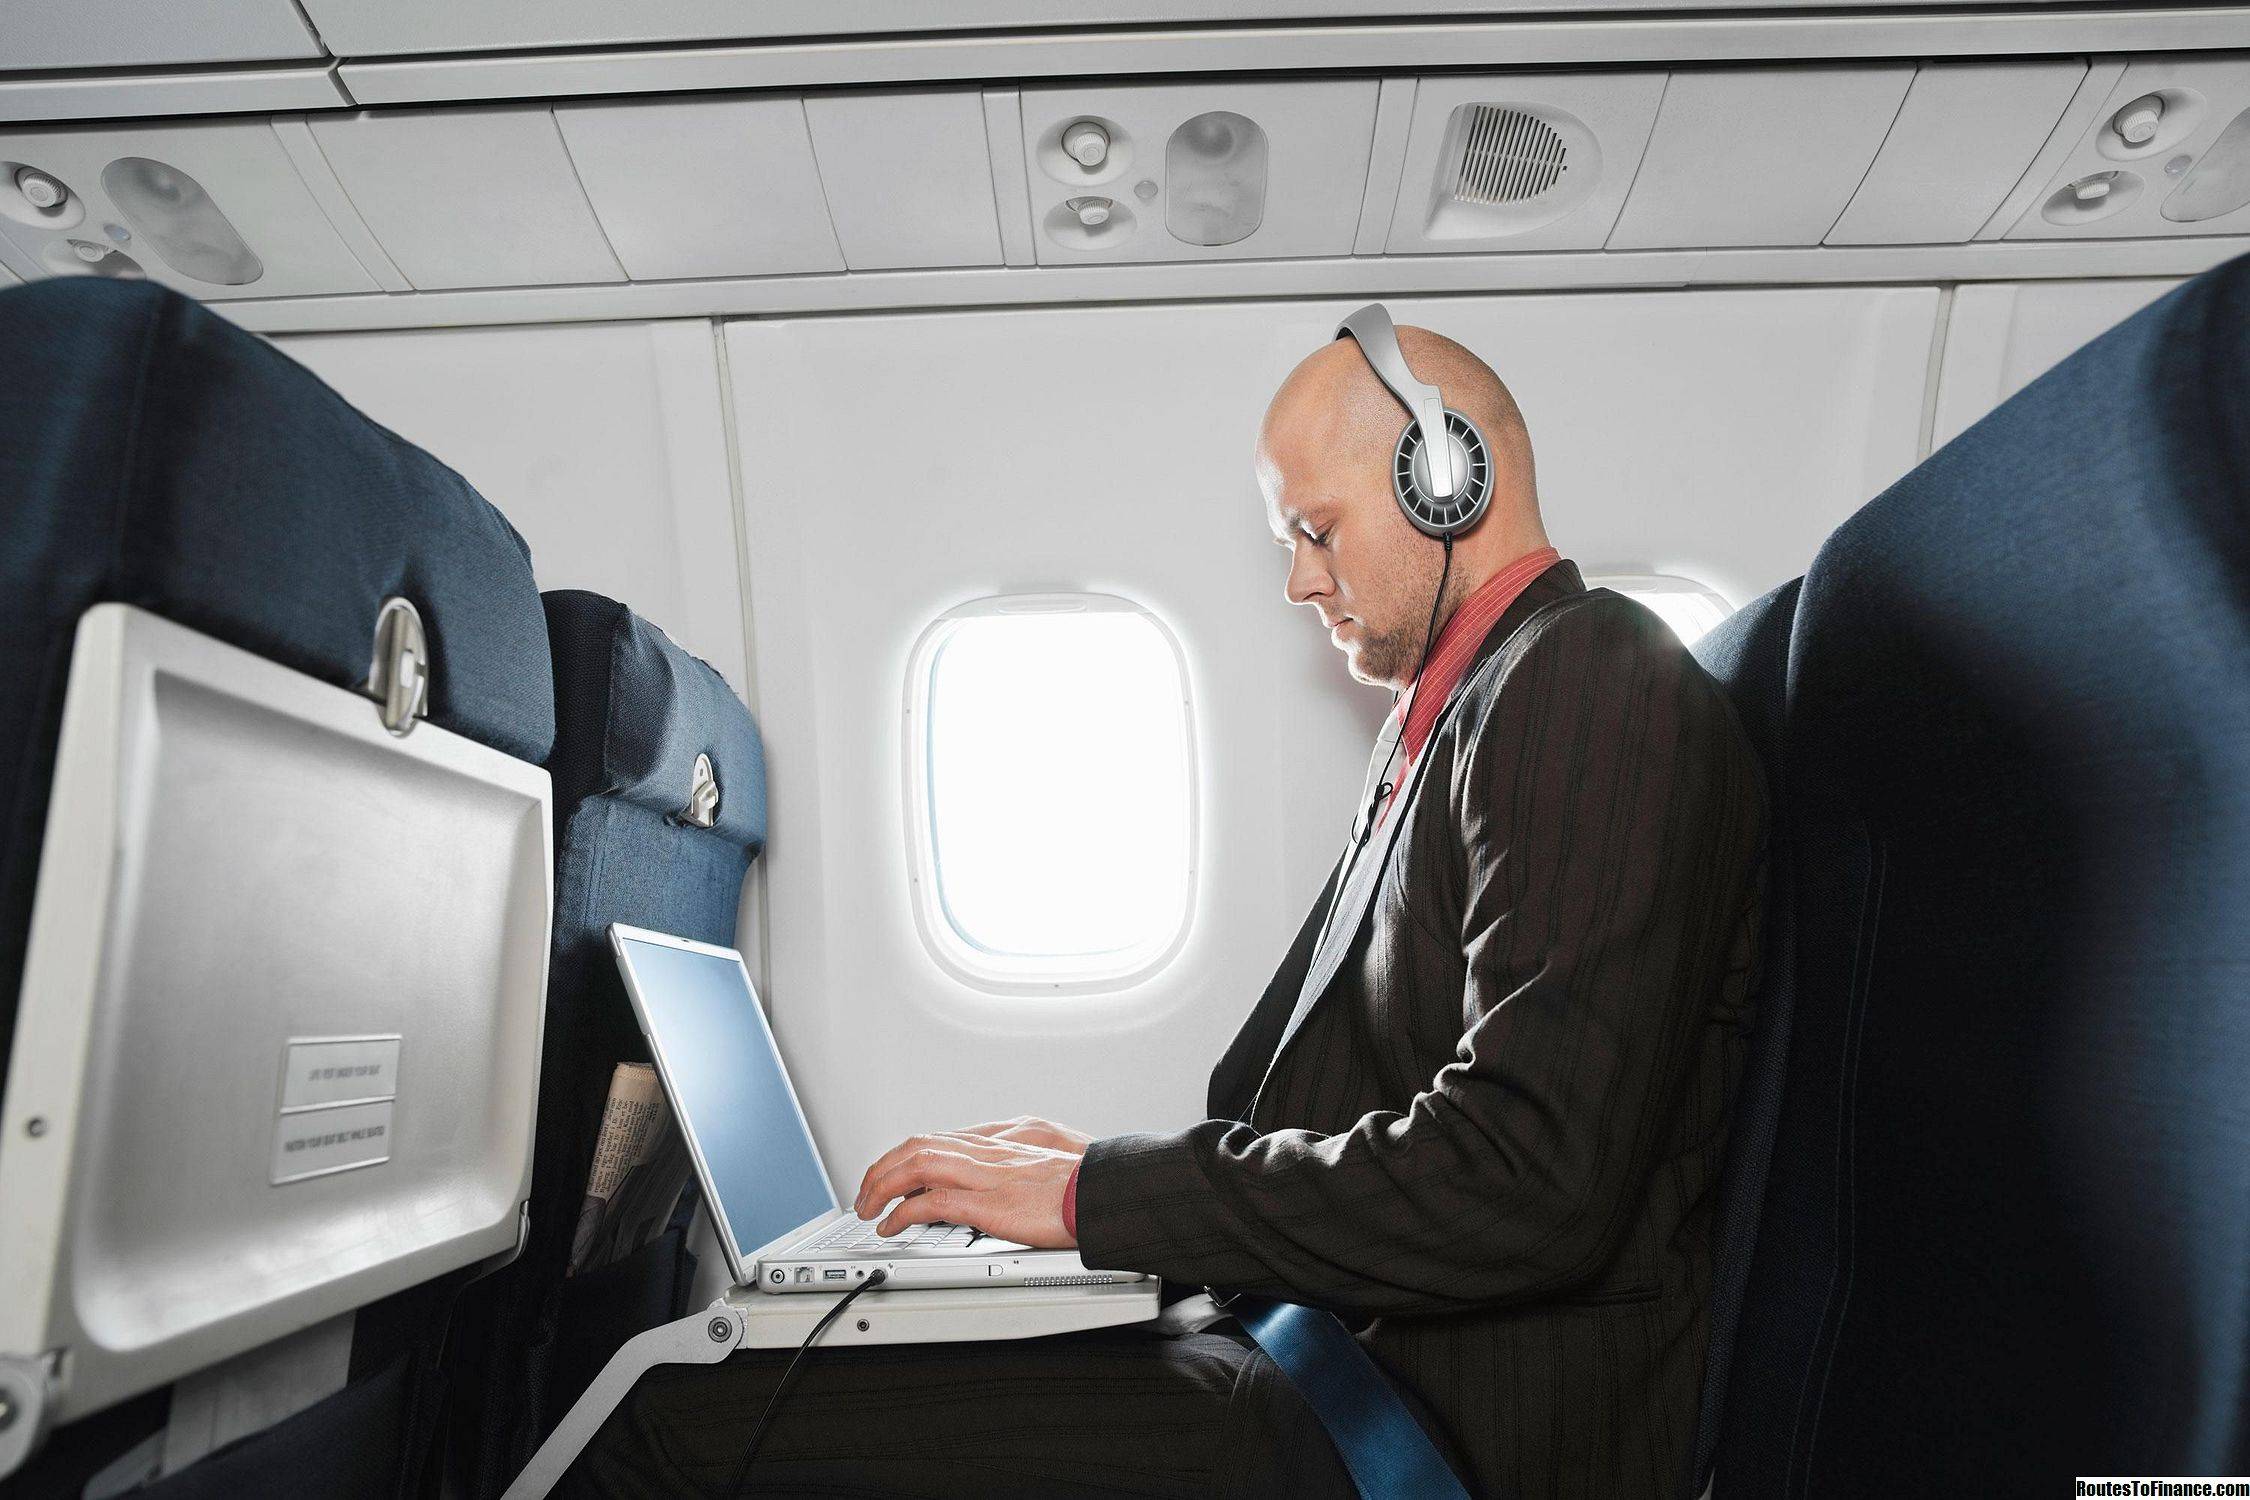 Есть ли в самолете интернет и сколько это стоит?